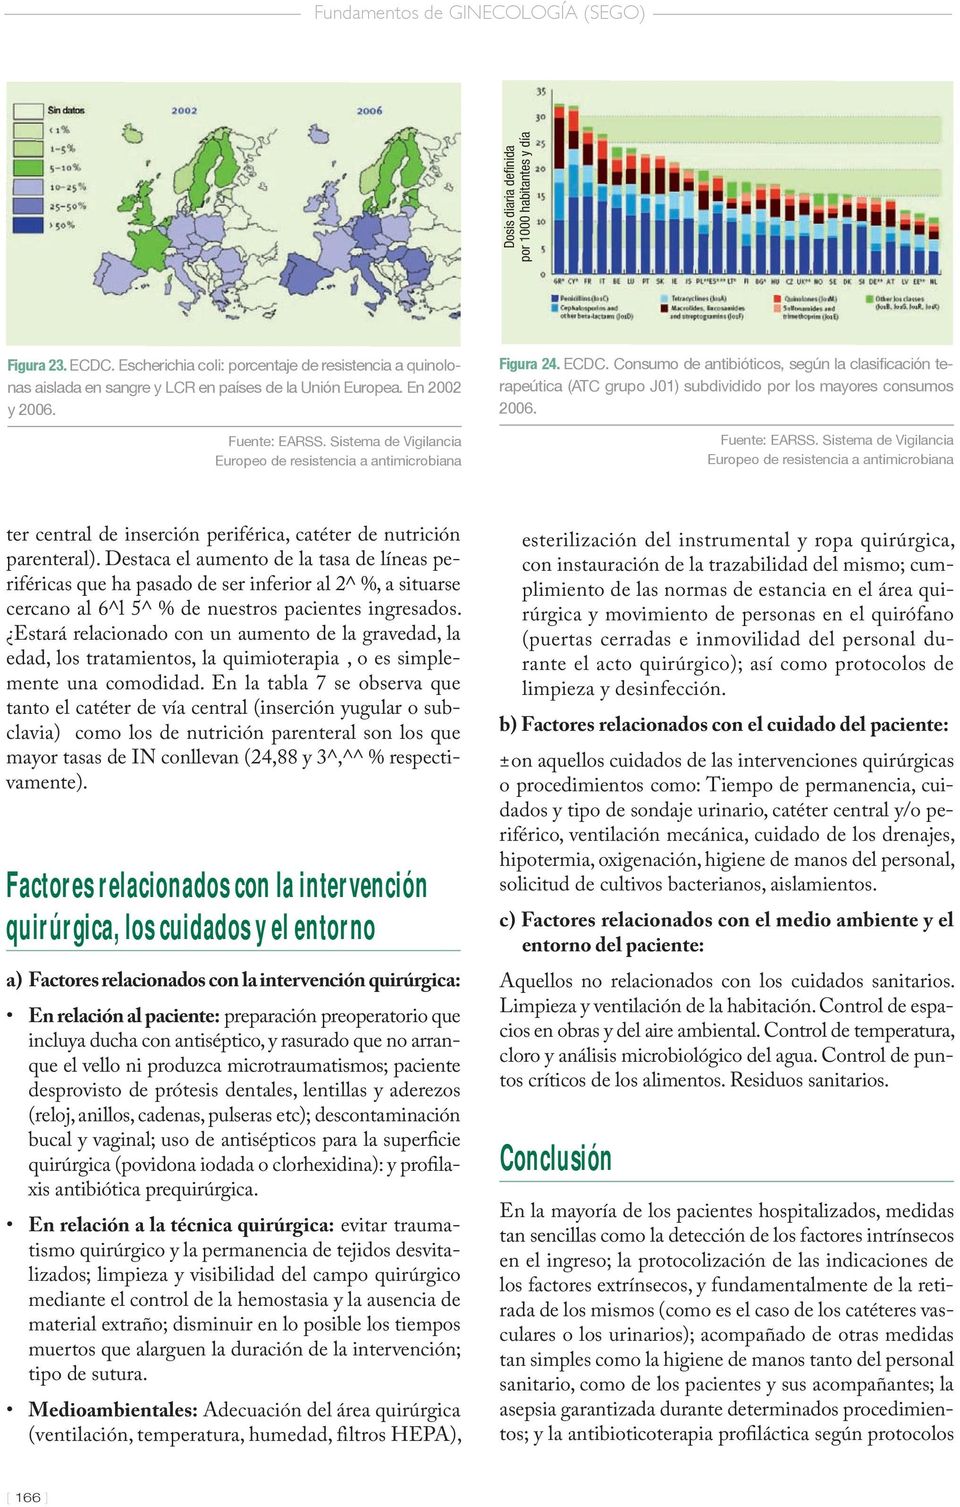 Sistema de Vigilancia Europeo de resistencia a antimicrobiana Figura 24. ECDC. Consumo de antibióticos, según la clasificación terapeútica (ATC grupo J01) subdividido por los mayores consumos 2006.